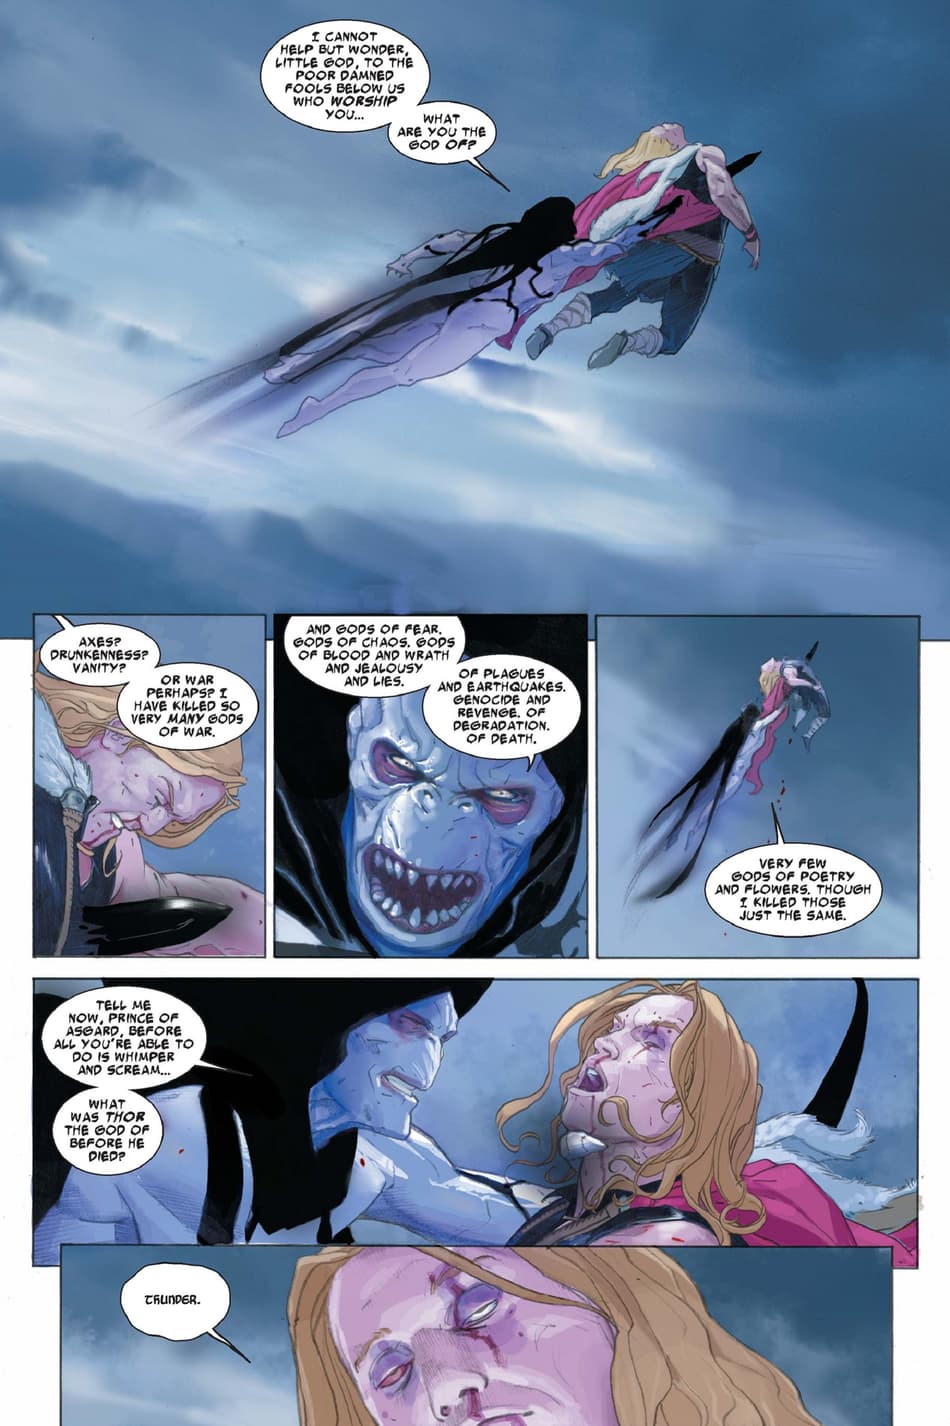 Gorr challenges Thor's godhood in THOR: GOD OF THUNDER (2012) #2.